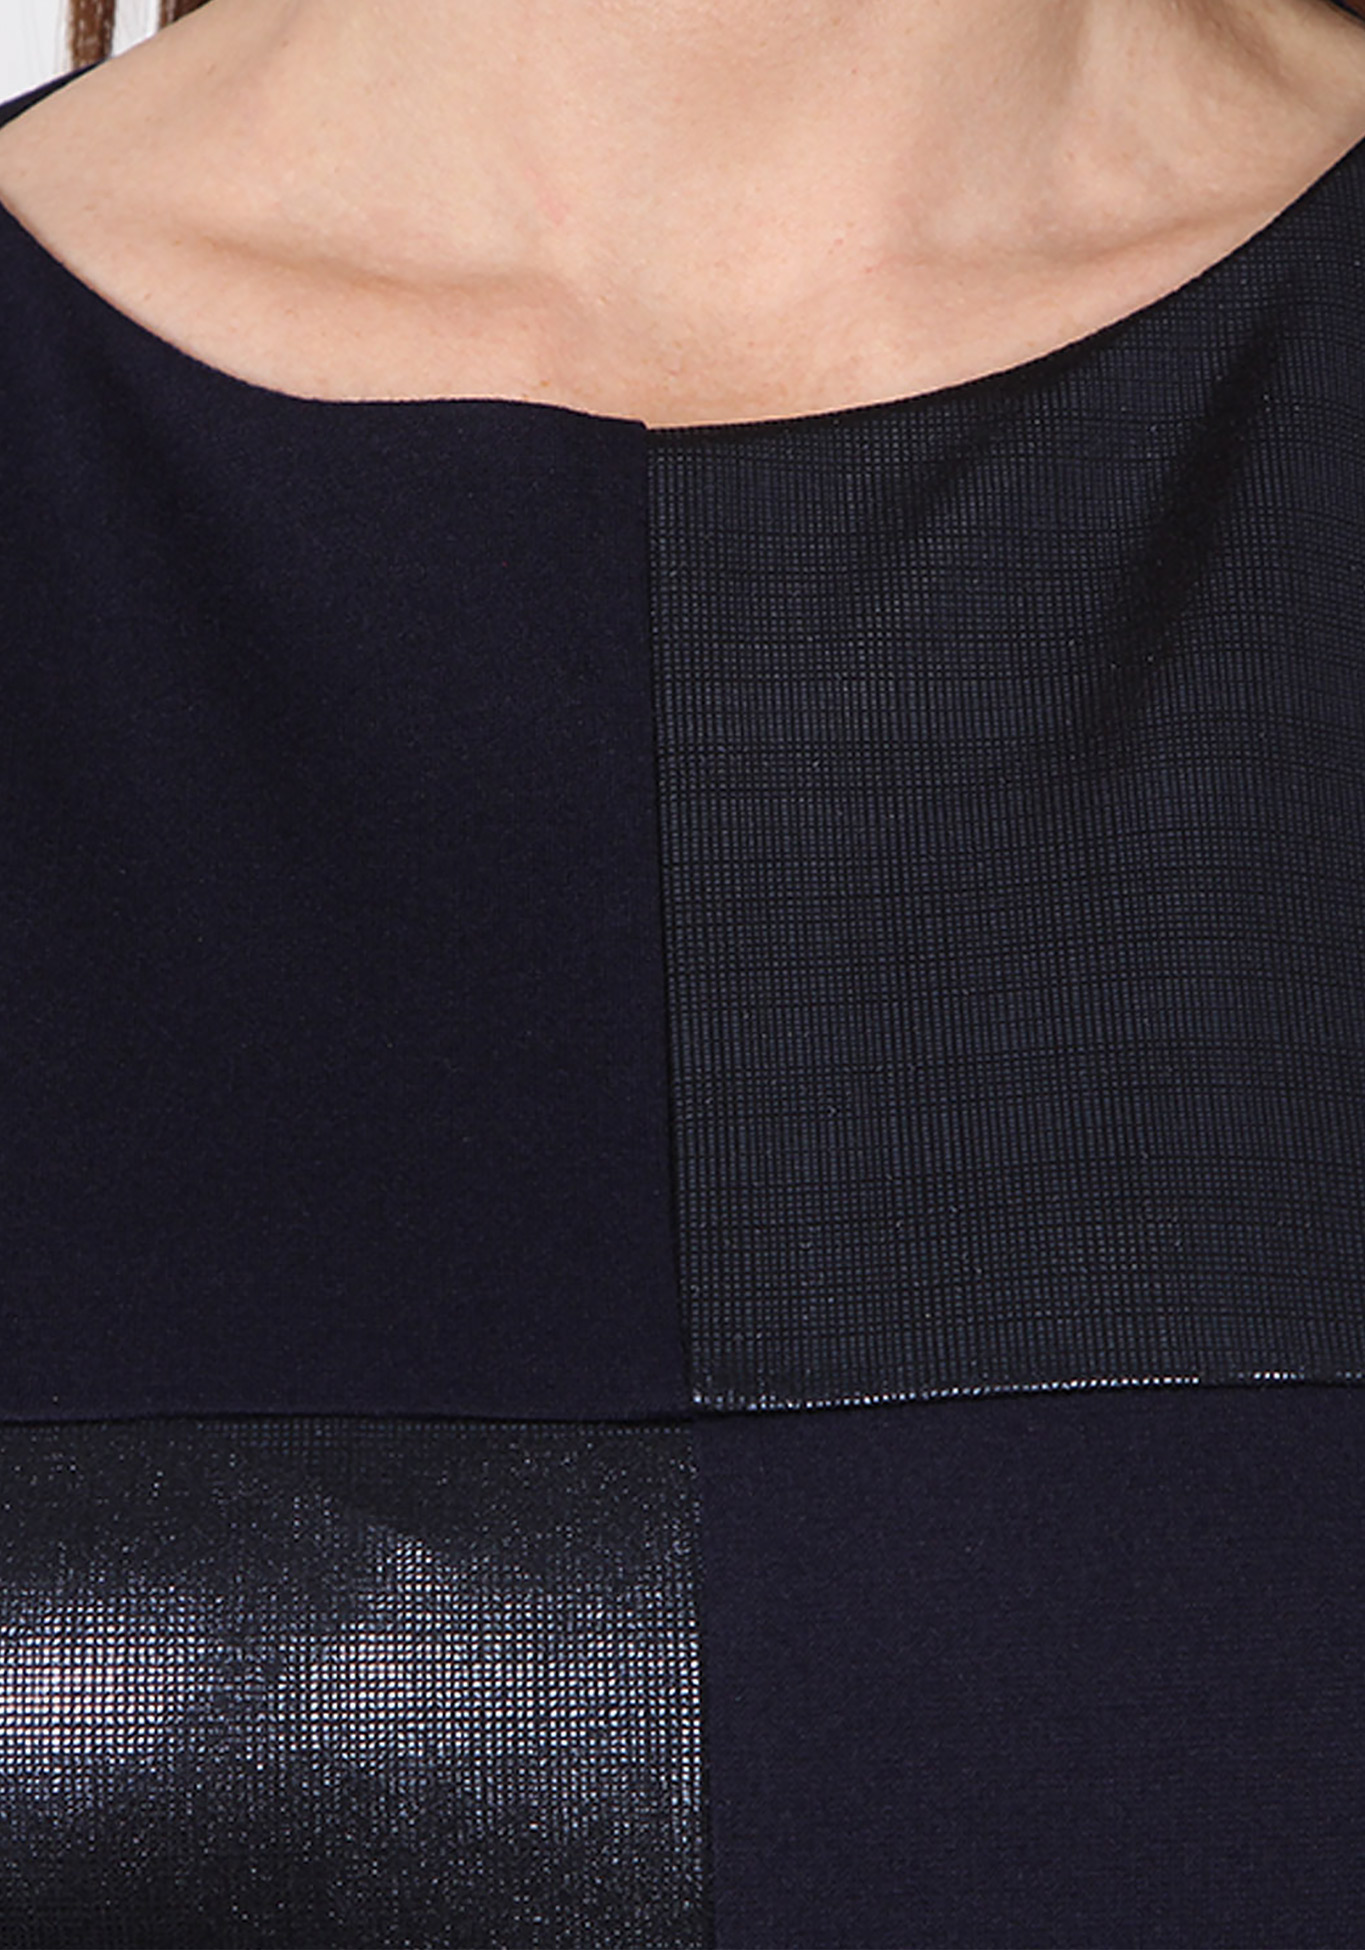 Платье «Триана» Veas, размер 48, цвет черный прямая модель - фото 3